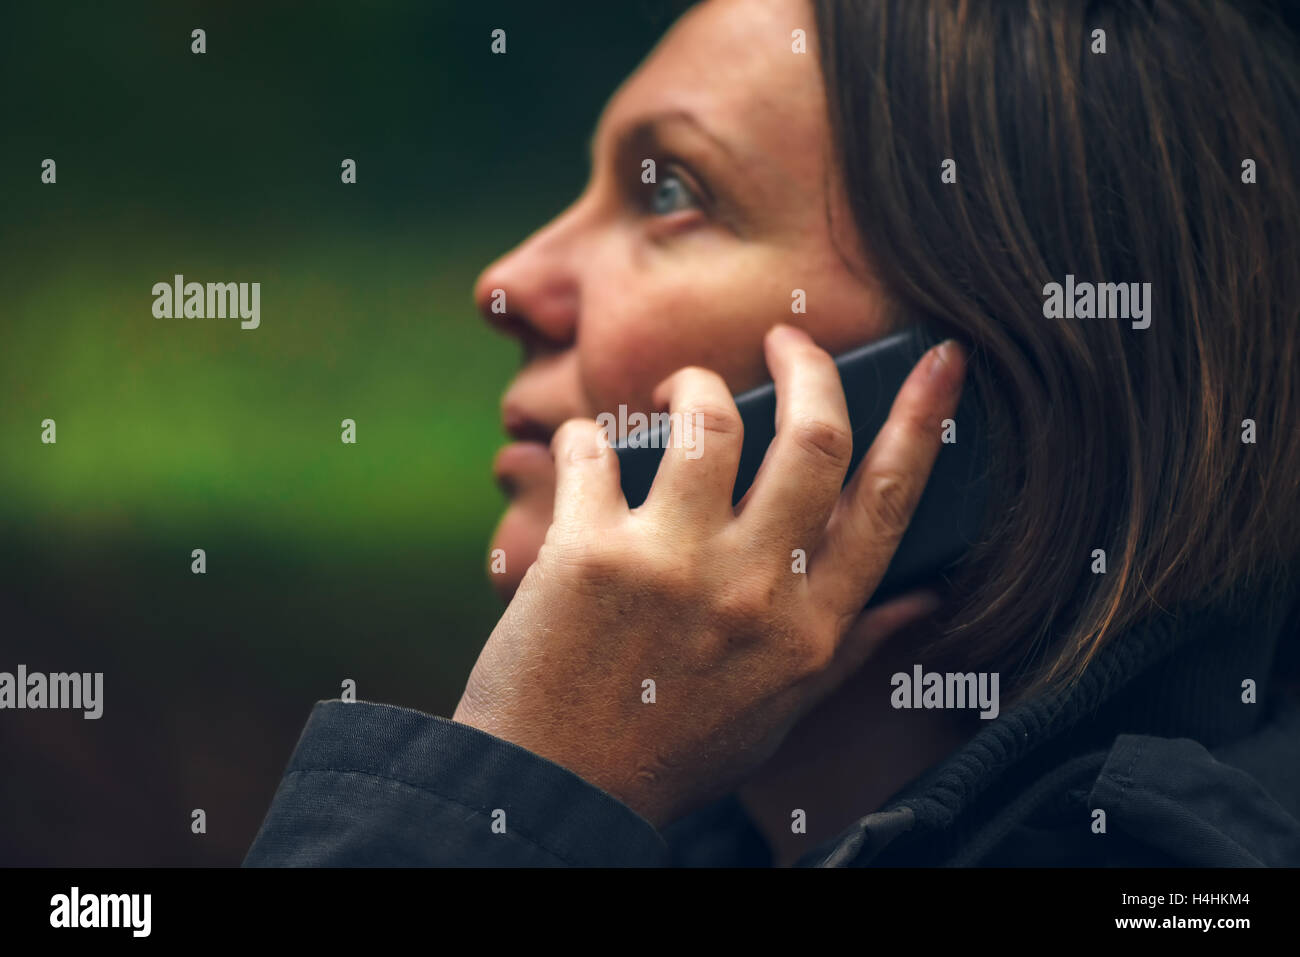 Femme avec sérieux talking on mobile phone in park, dramatique du voyant à travers la cime des arbres et de tomber sur son visage Banque D'Images